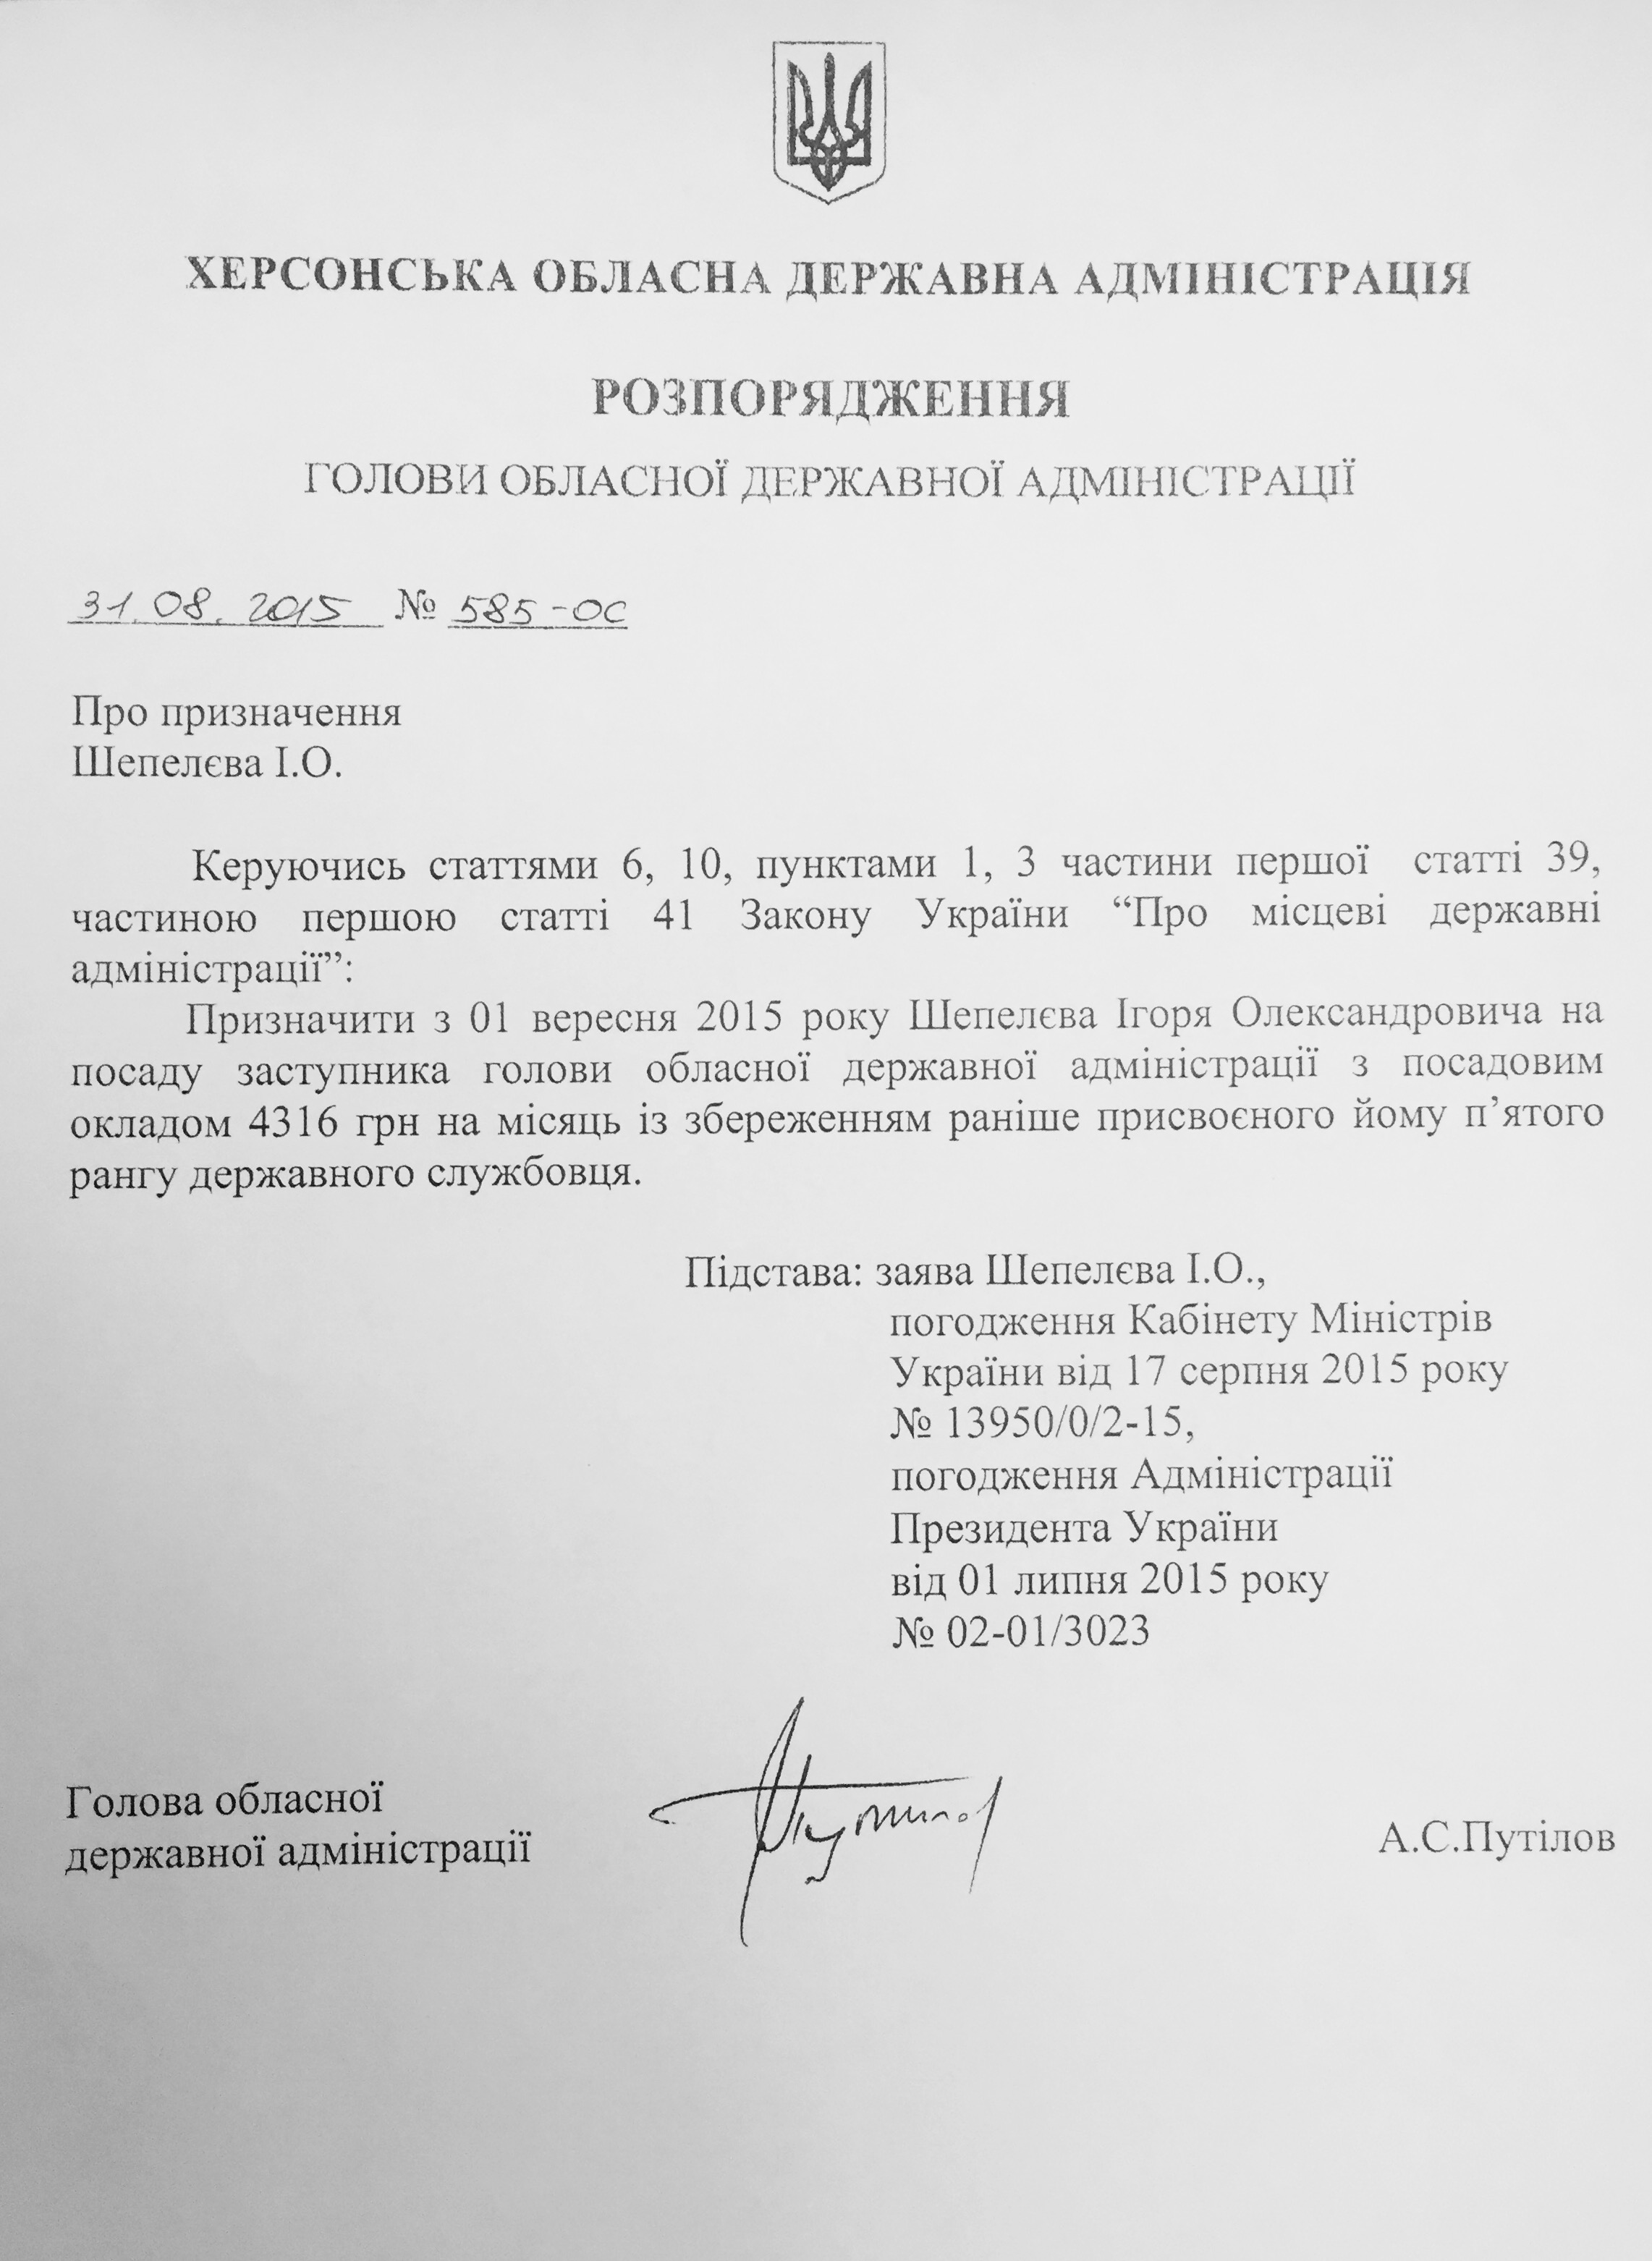 Игорь Шепелев, заместитель Путилова